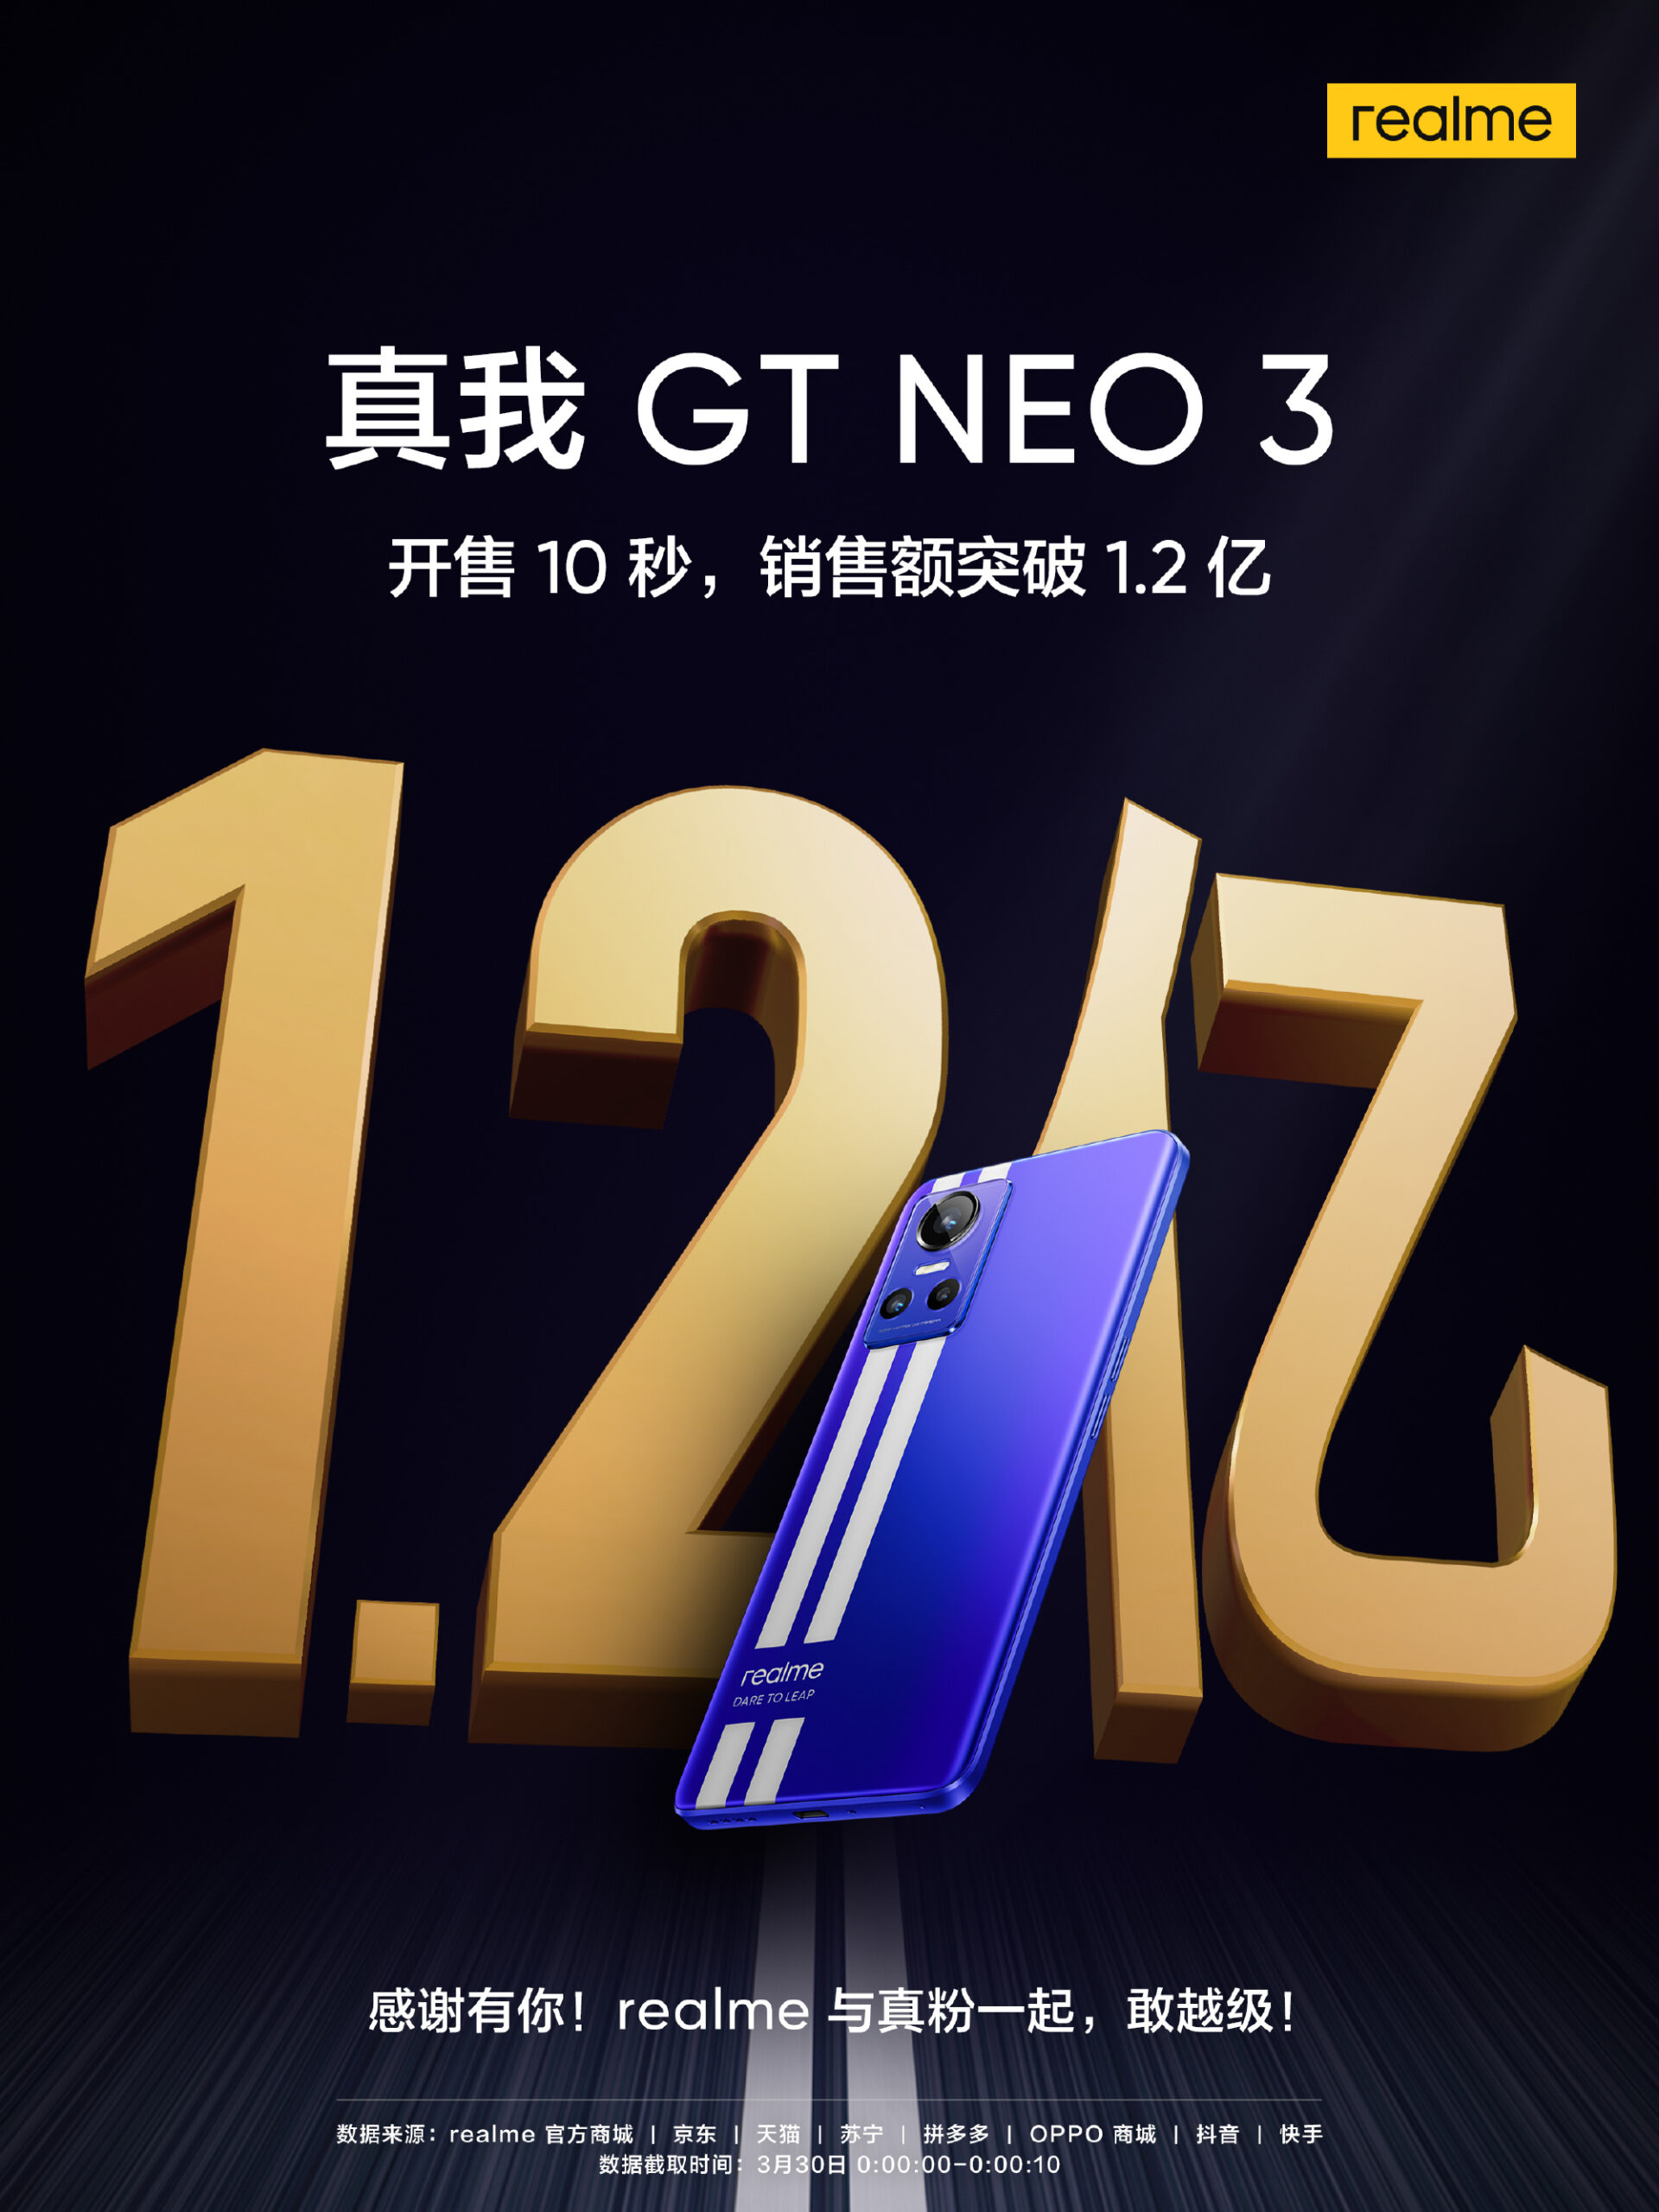 Realme GT Neo3 ขายได้กว่า 100000 เครื่องที่จีน ภายในวันแรกที่เปิดวางขาย